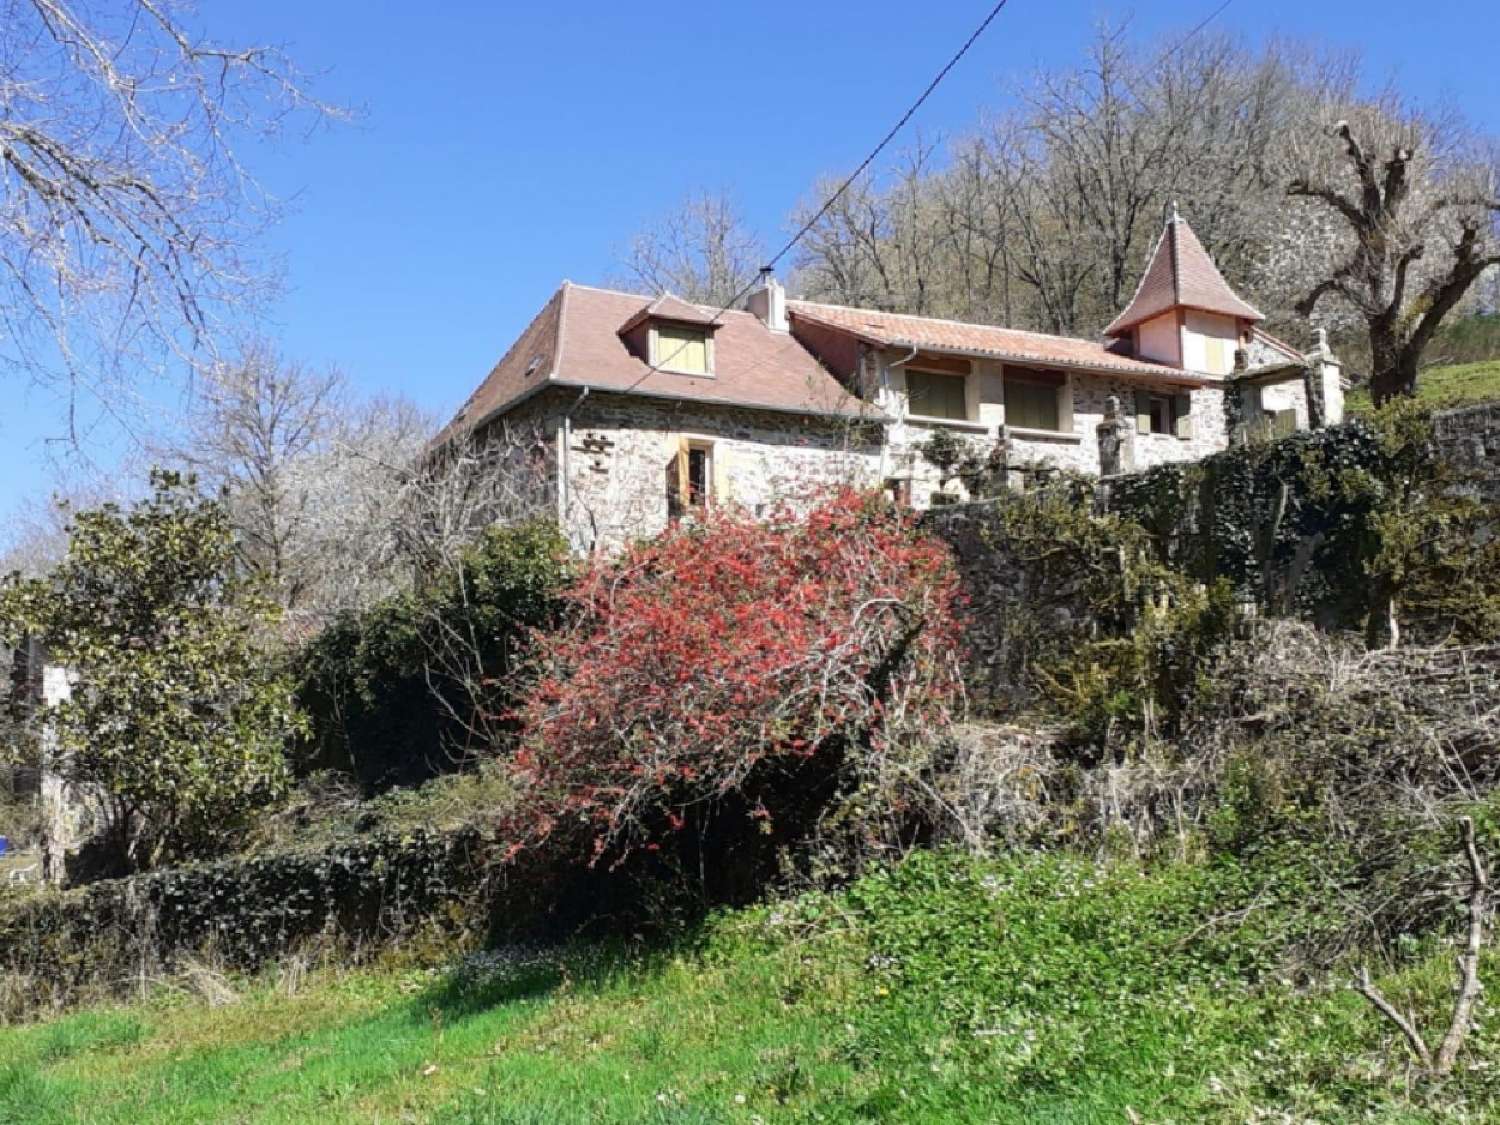  à vendre maison Thiviers Dordogne 1